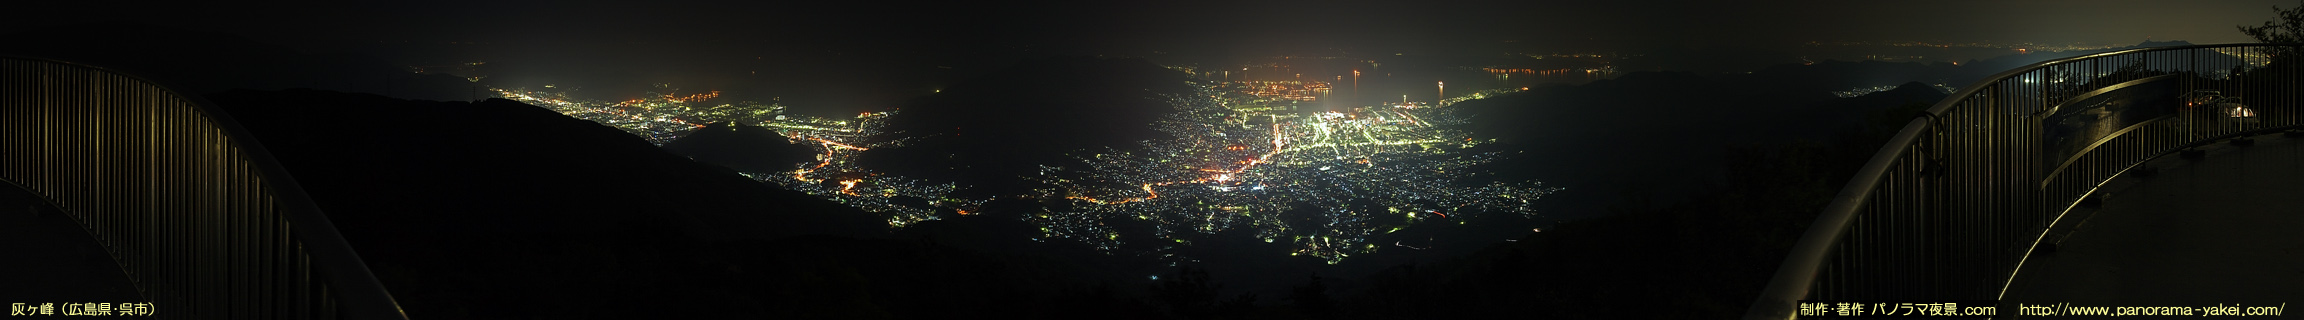 灰ヶ峰からのパノラマ夜景写真